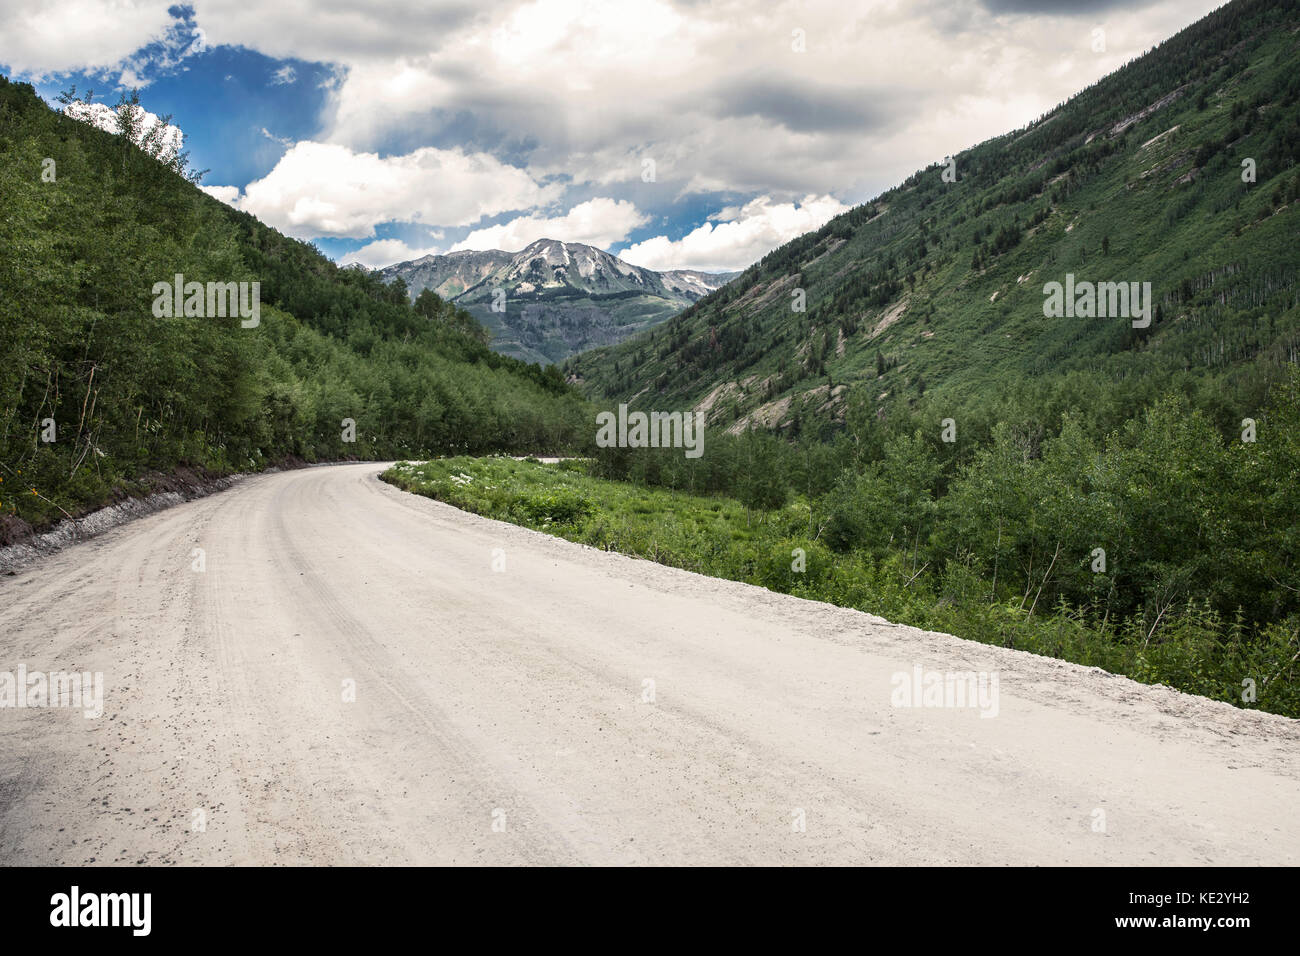 Vide route de terre menant aux montagnes, montagnes Rocheuses, Colorado, États-Unis Banque D'Images